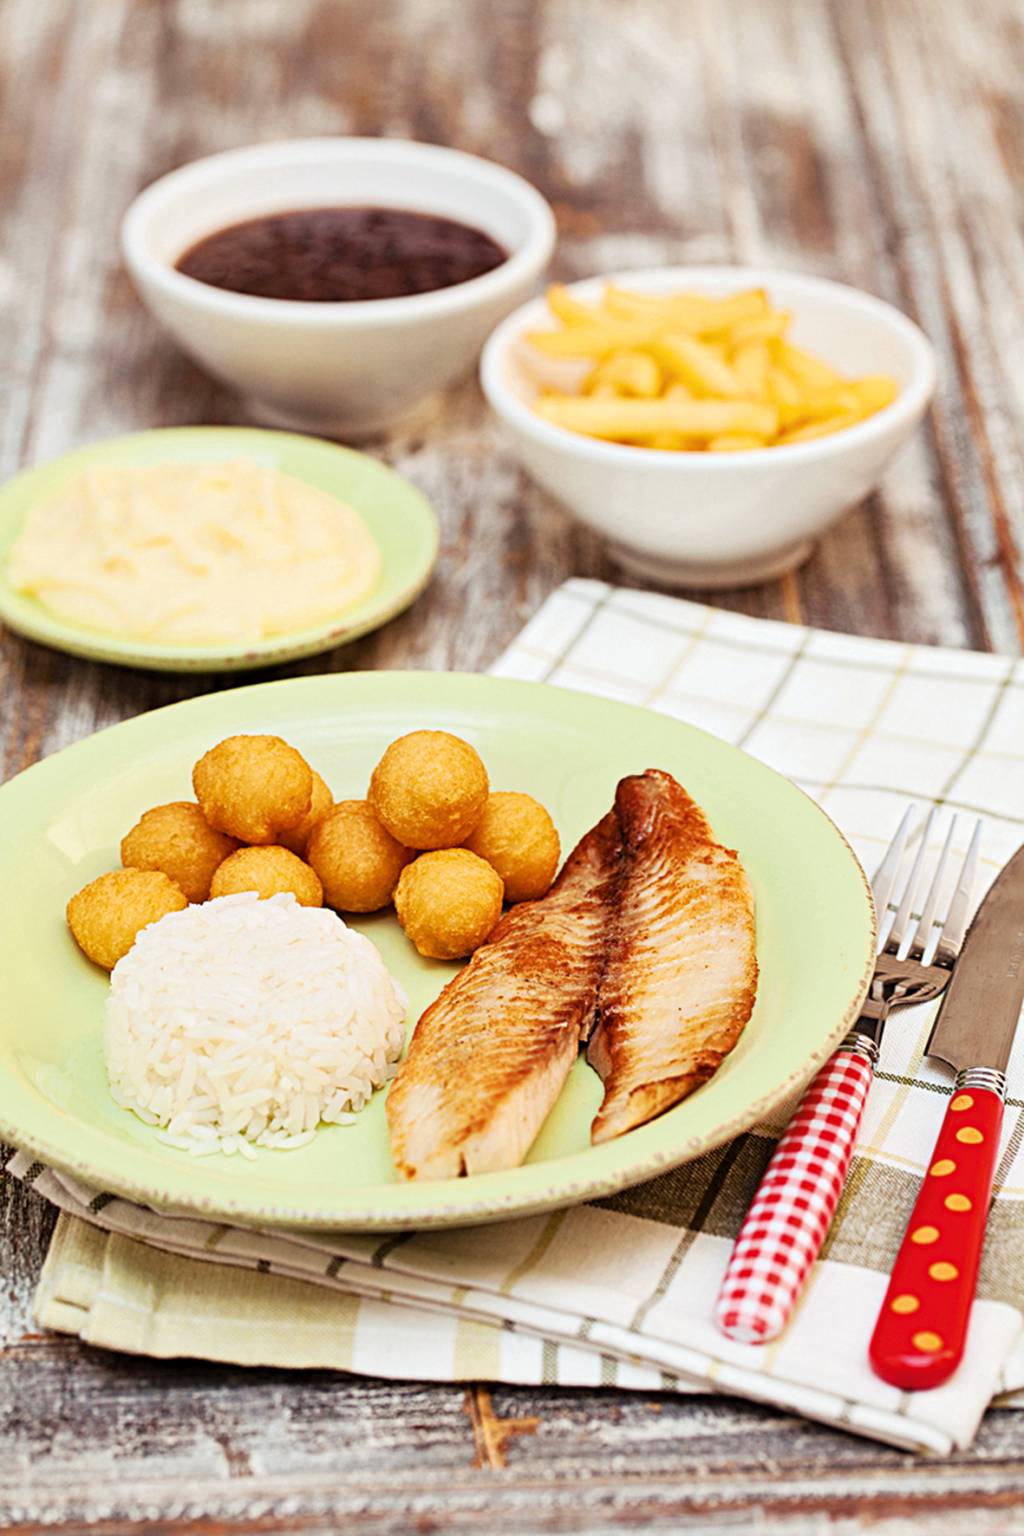 Peixe grelhado, arroz, feijão e batata (R$ 28,00): no Gula Gula